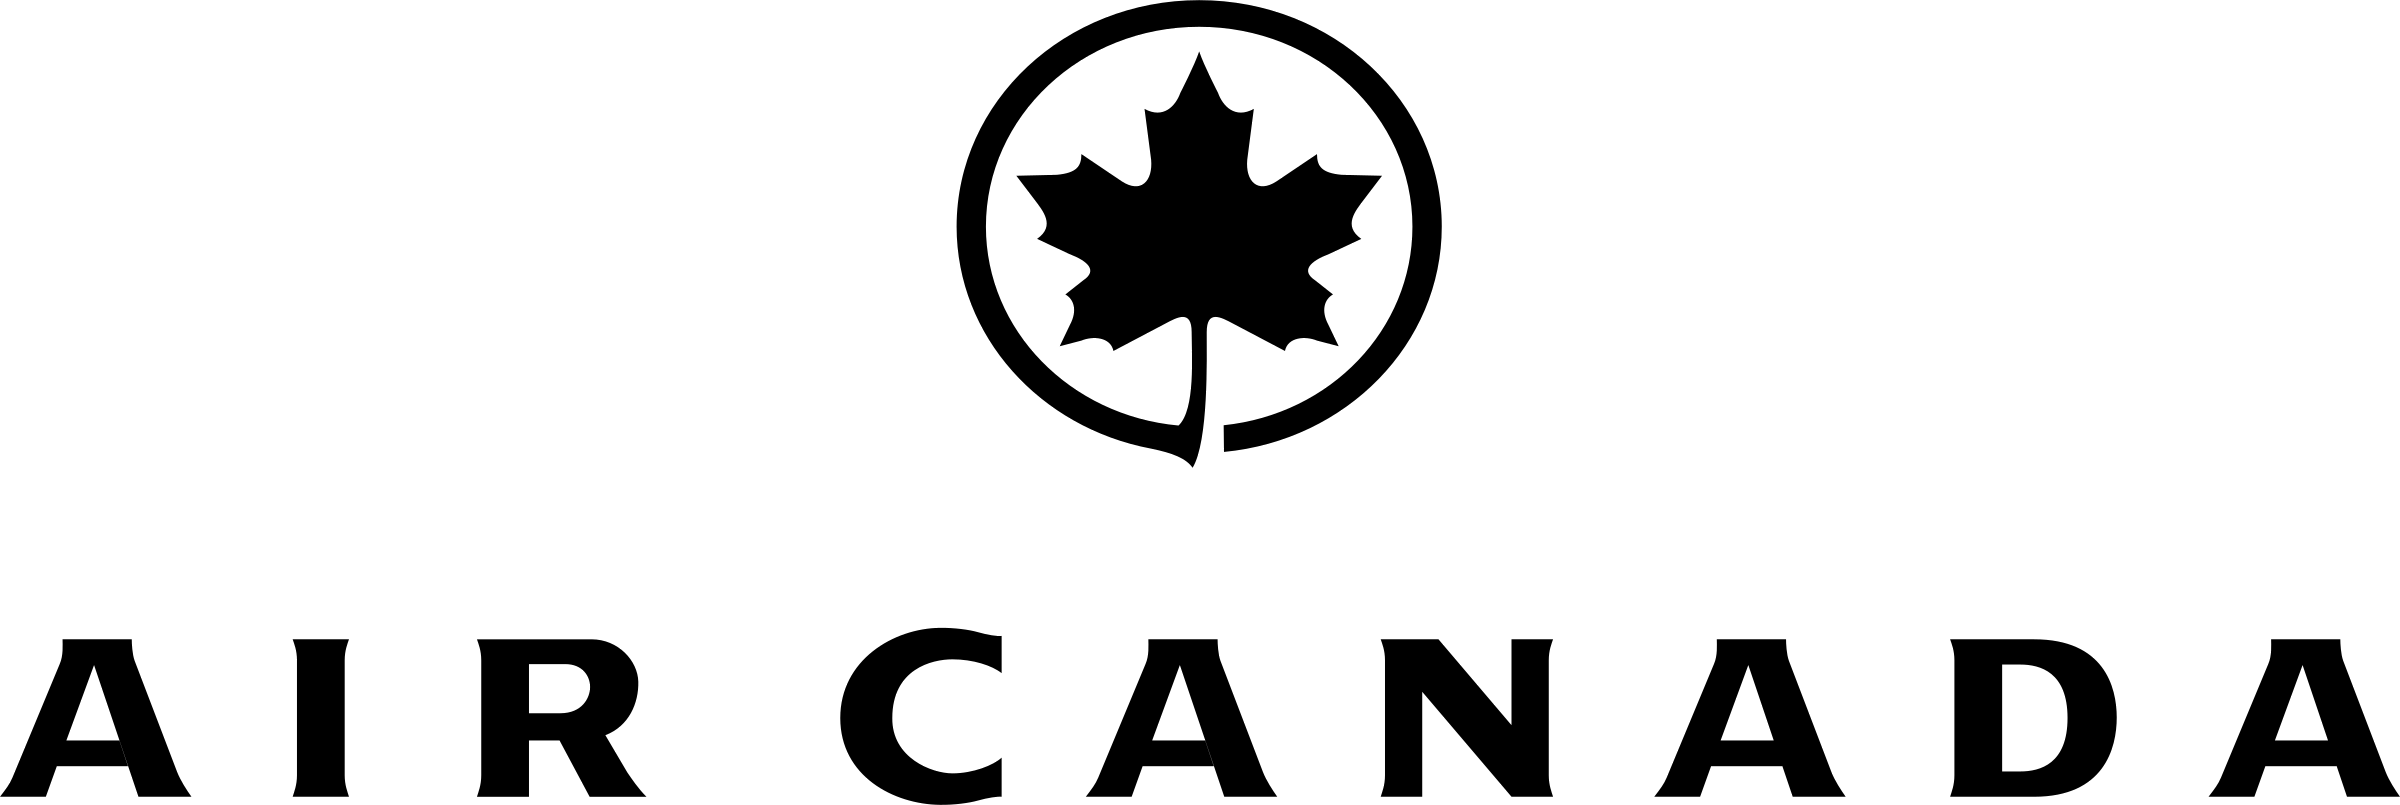 Canada White Logo - Air Canada Logo PNG Transparent & SVG Vector